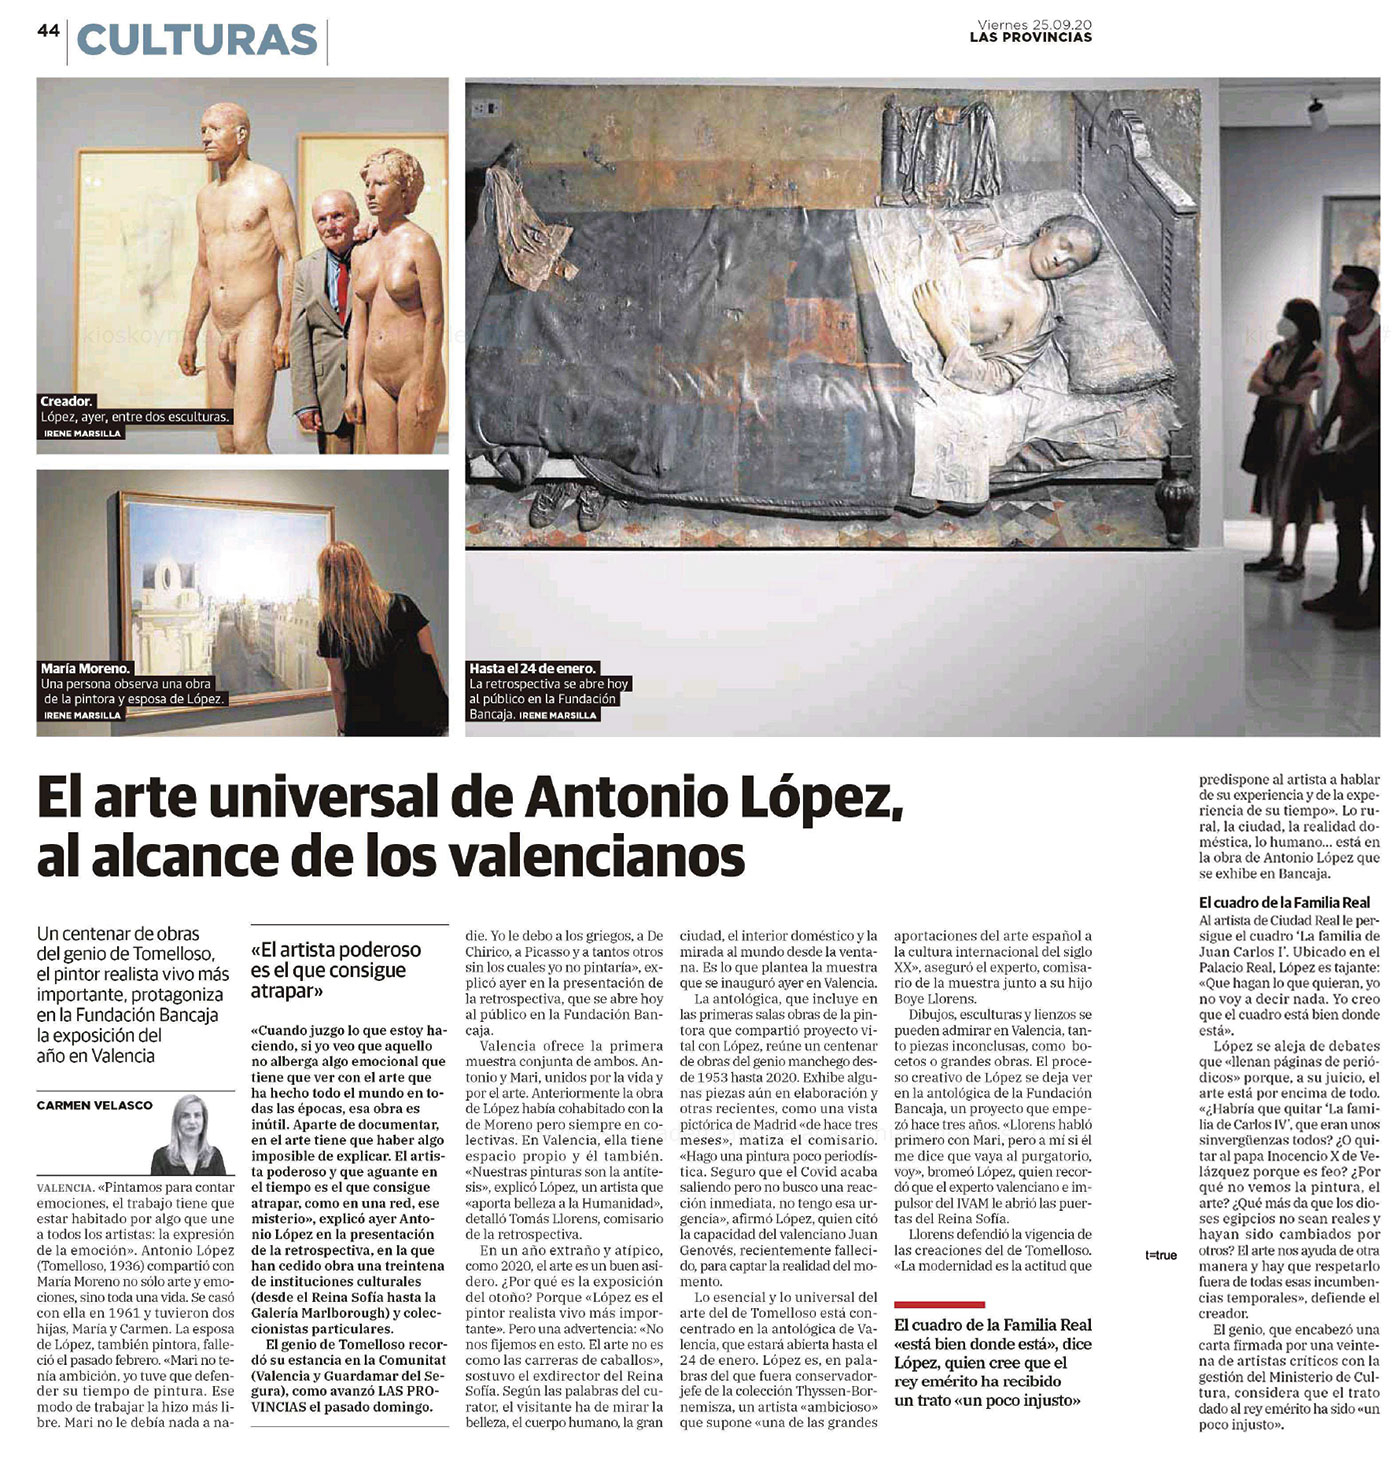 El arte universal de Antonio López, al alcance de los valencianos